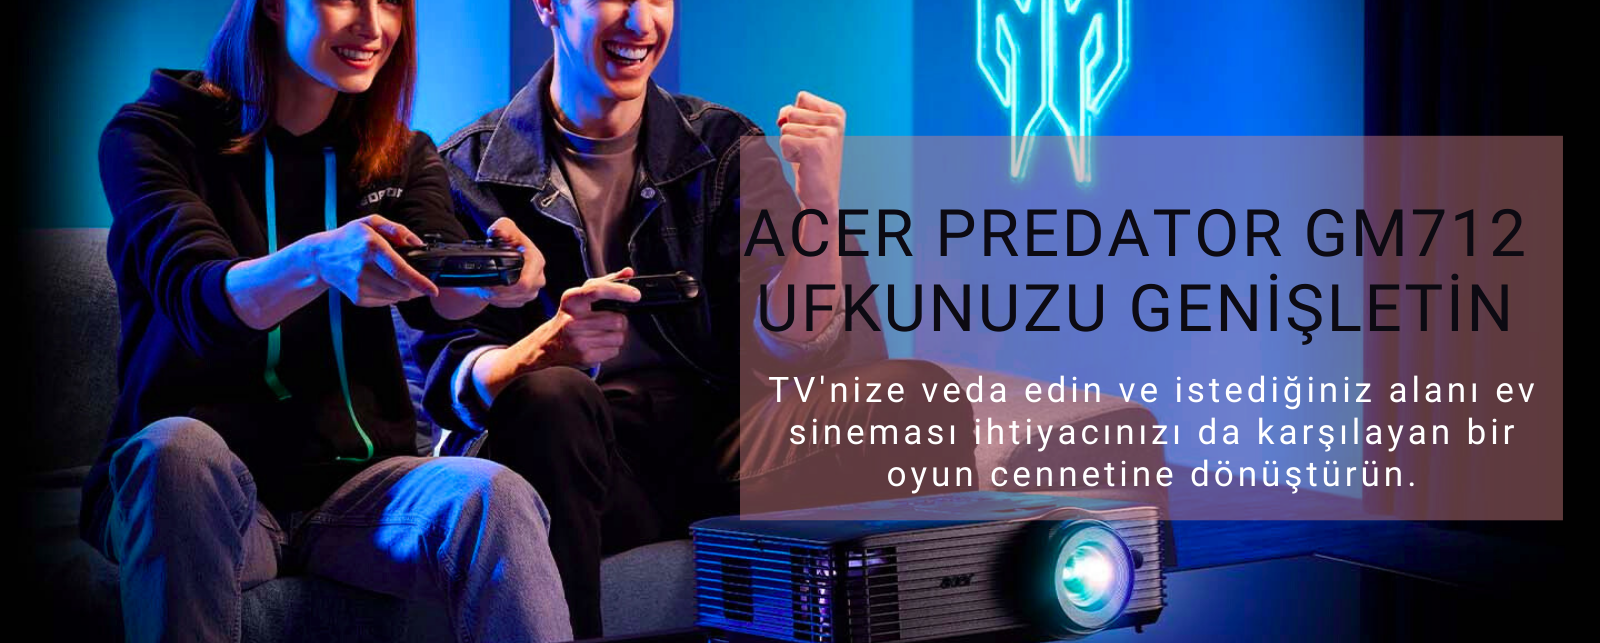 Acer Predator GM712 4K Gaming Projeksiyon